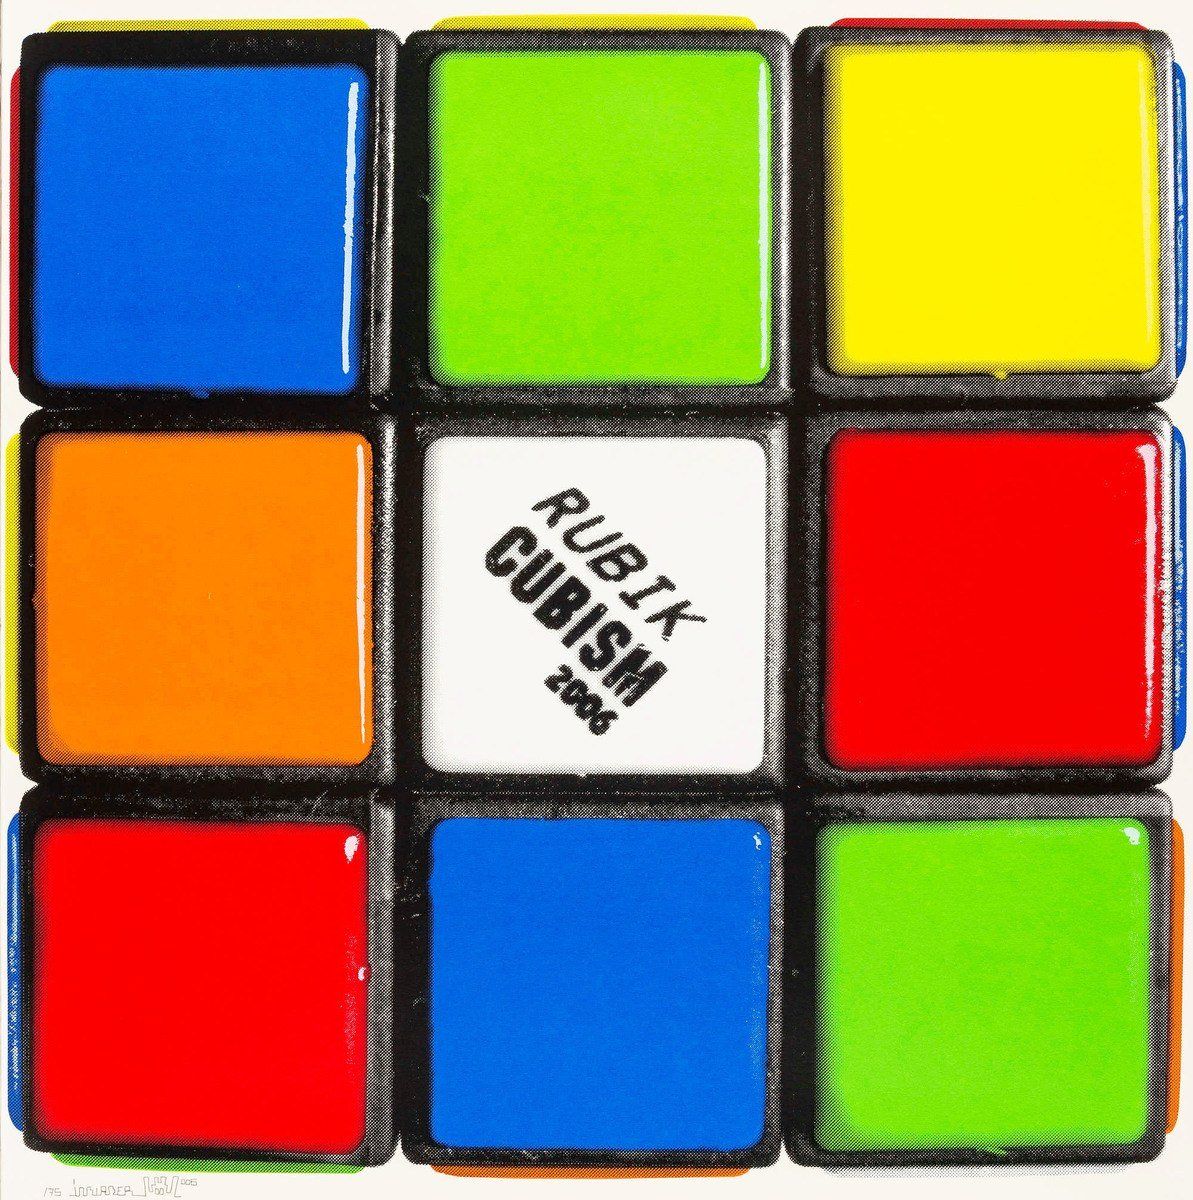 Rubikcubism by Invader Background & Meaning | MyArtBroker